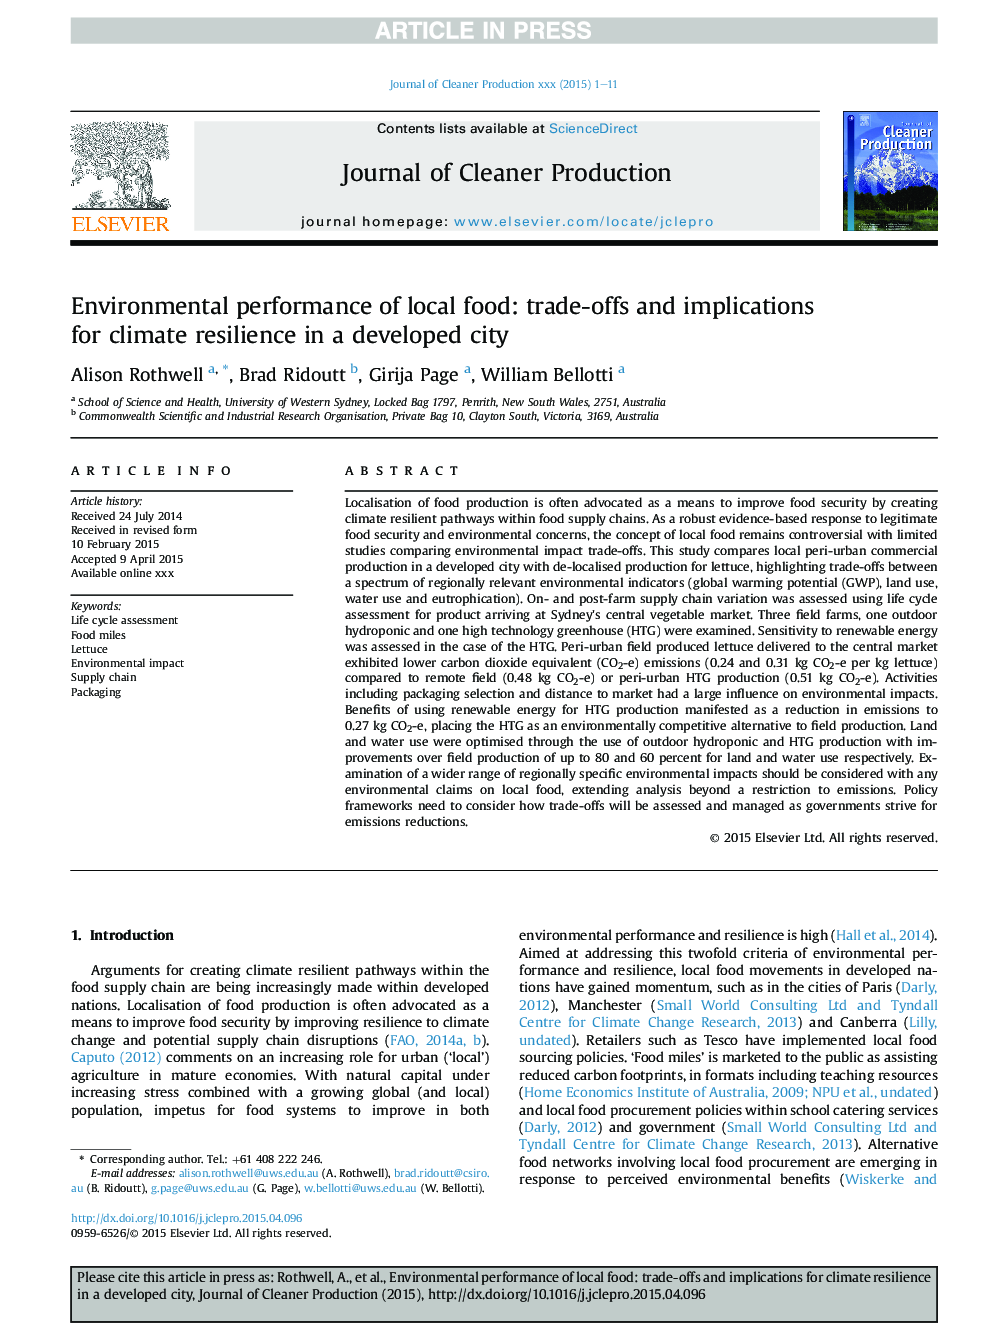 عملکرد محیطی غذای محلی: ترکیبات و پیامدهای انعطاف پذیری آب و هوایی در یک شهر توسعه یافته 